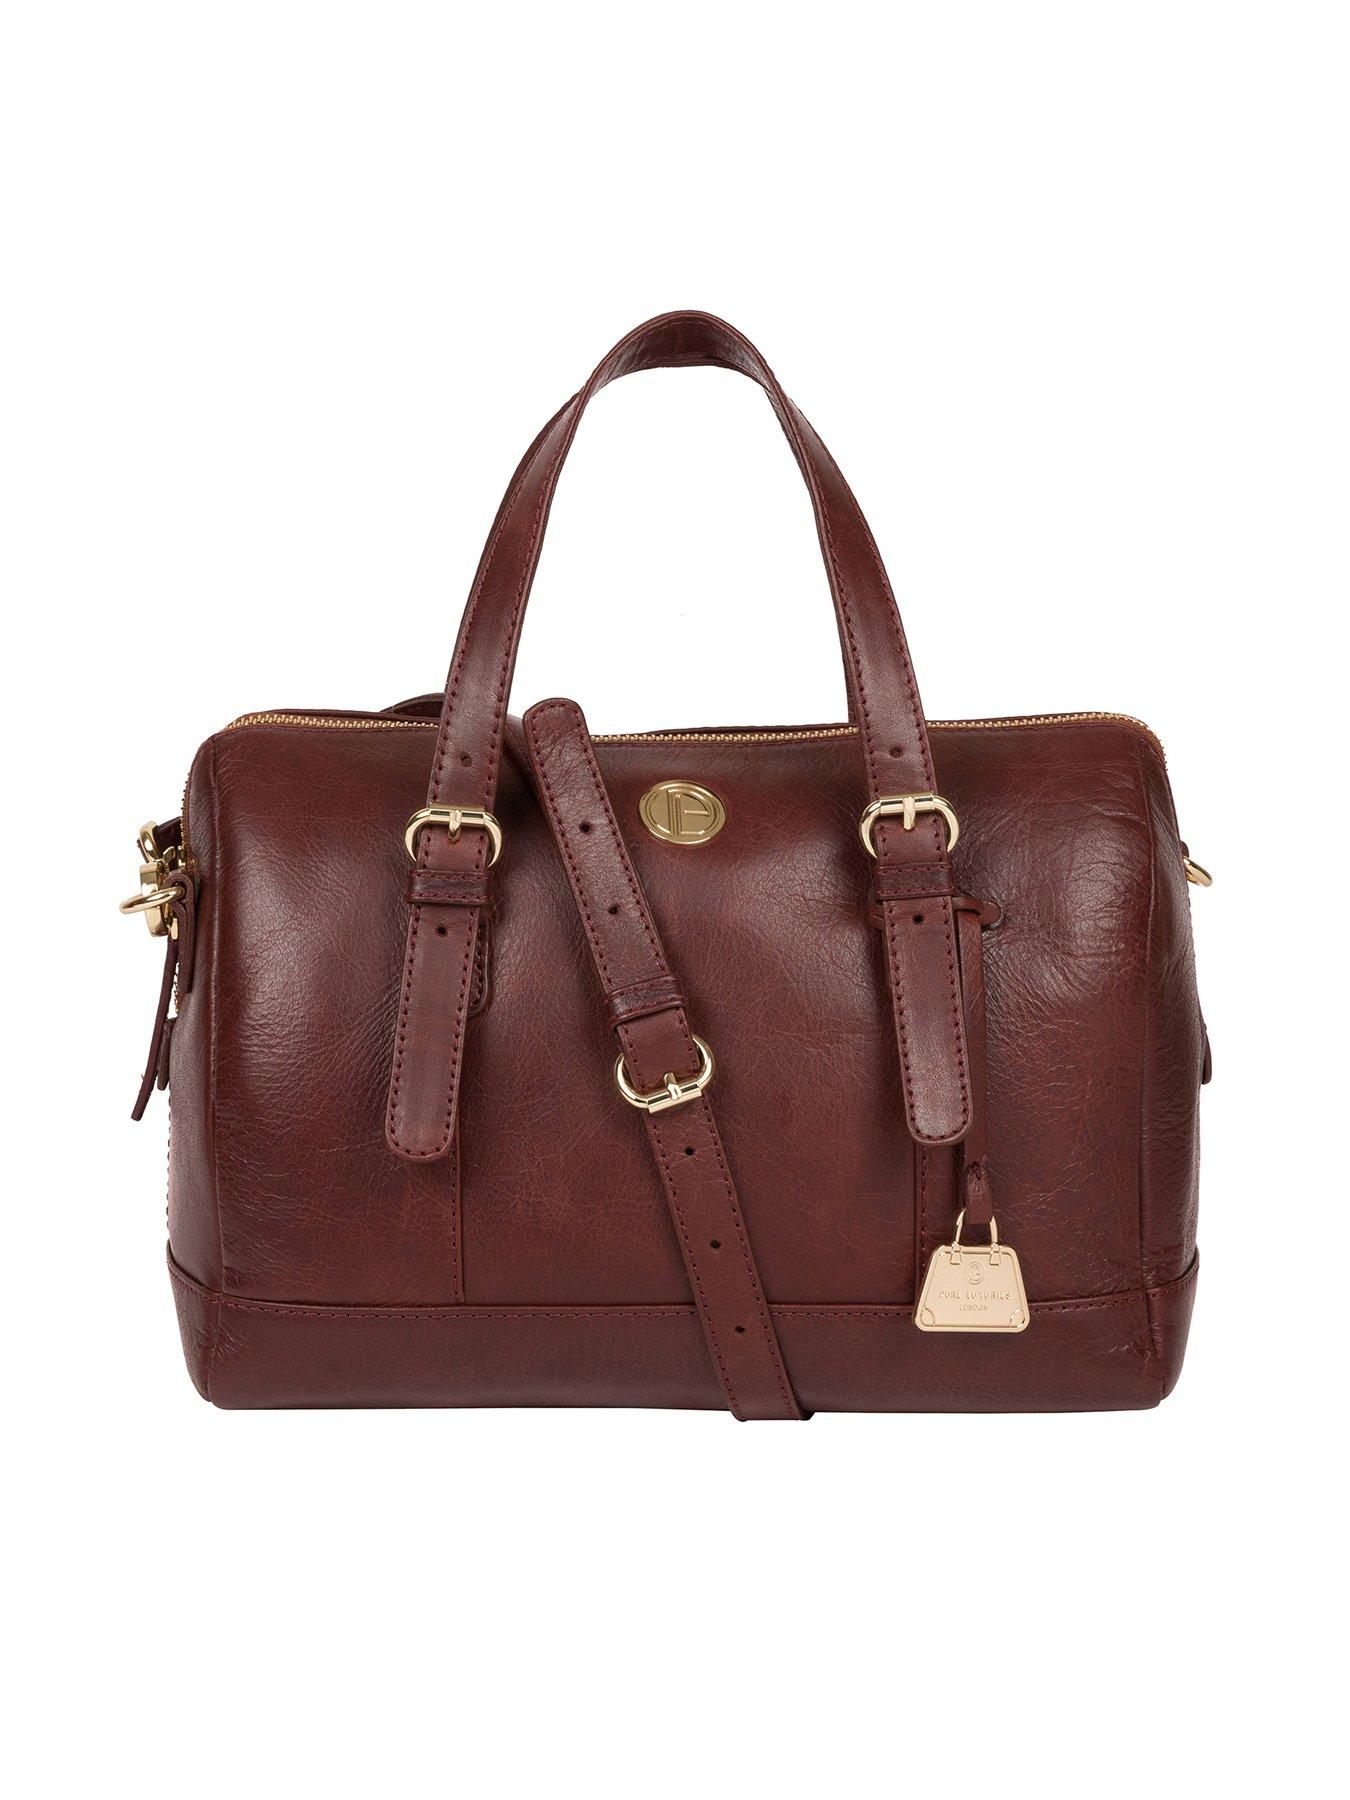  Iris Leather Zip Top Handbag - Chestnut